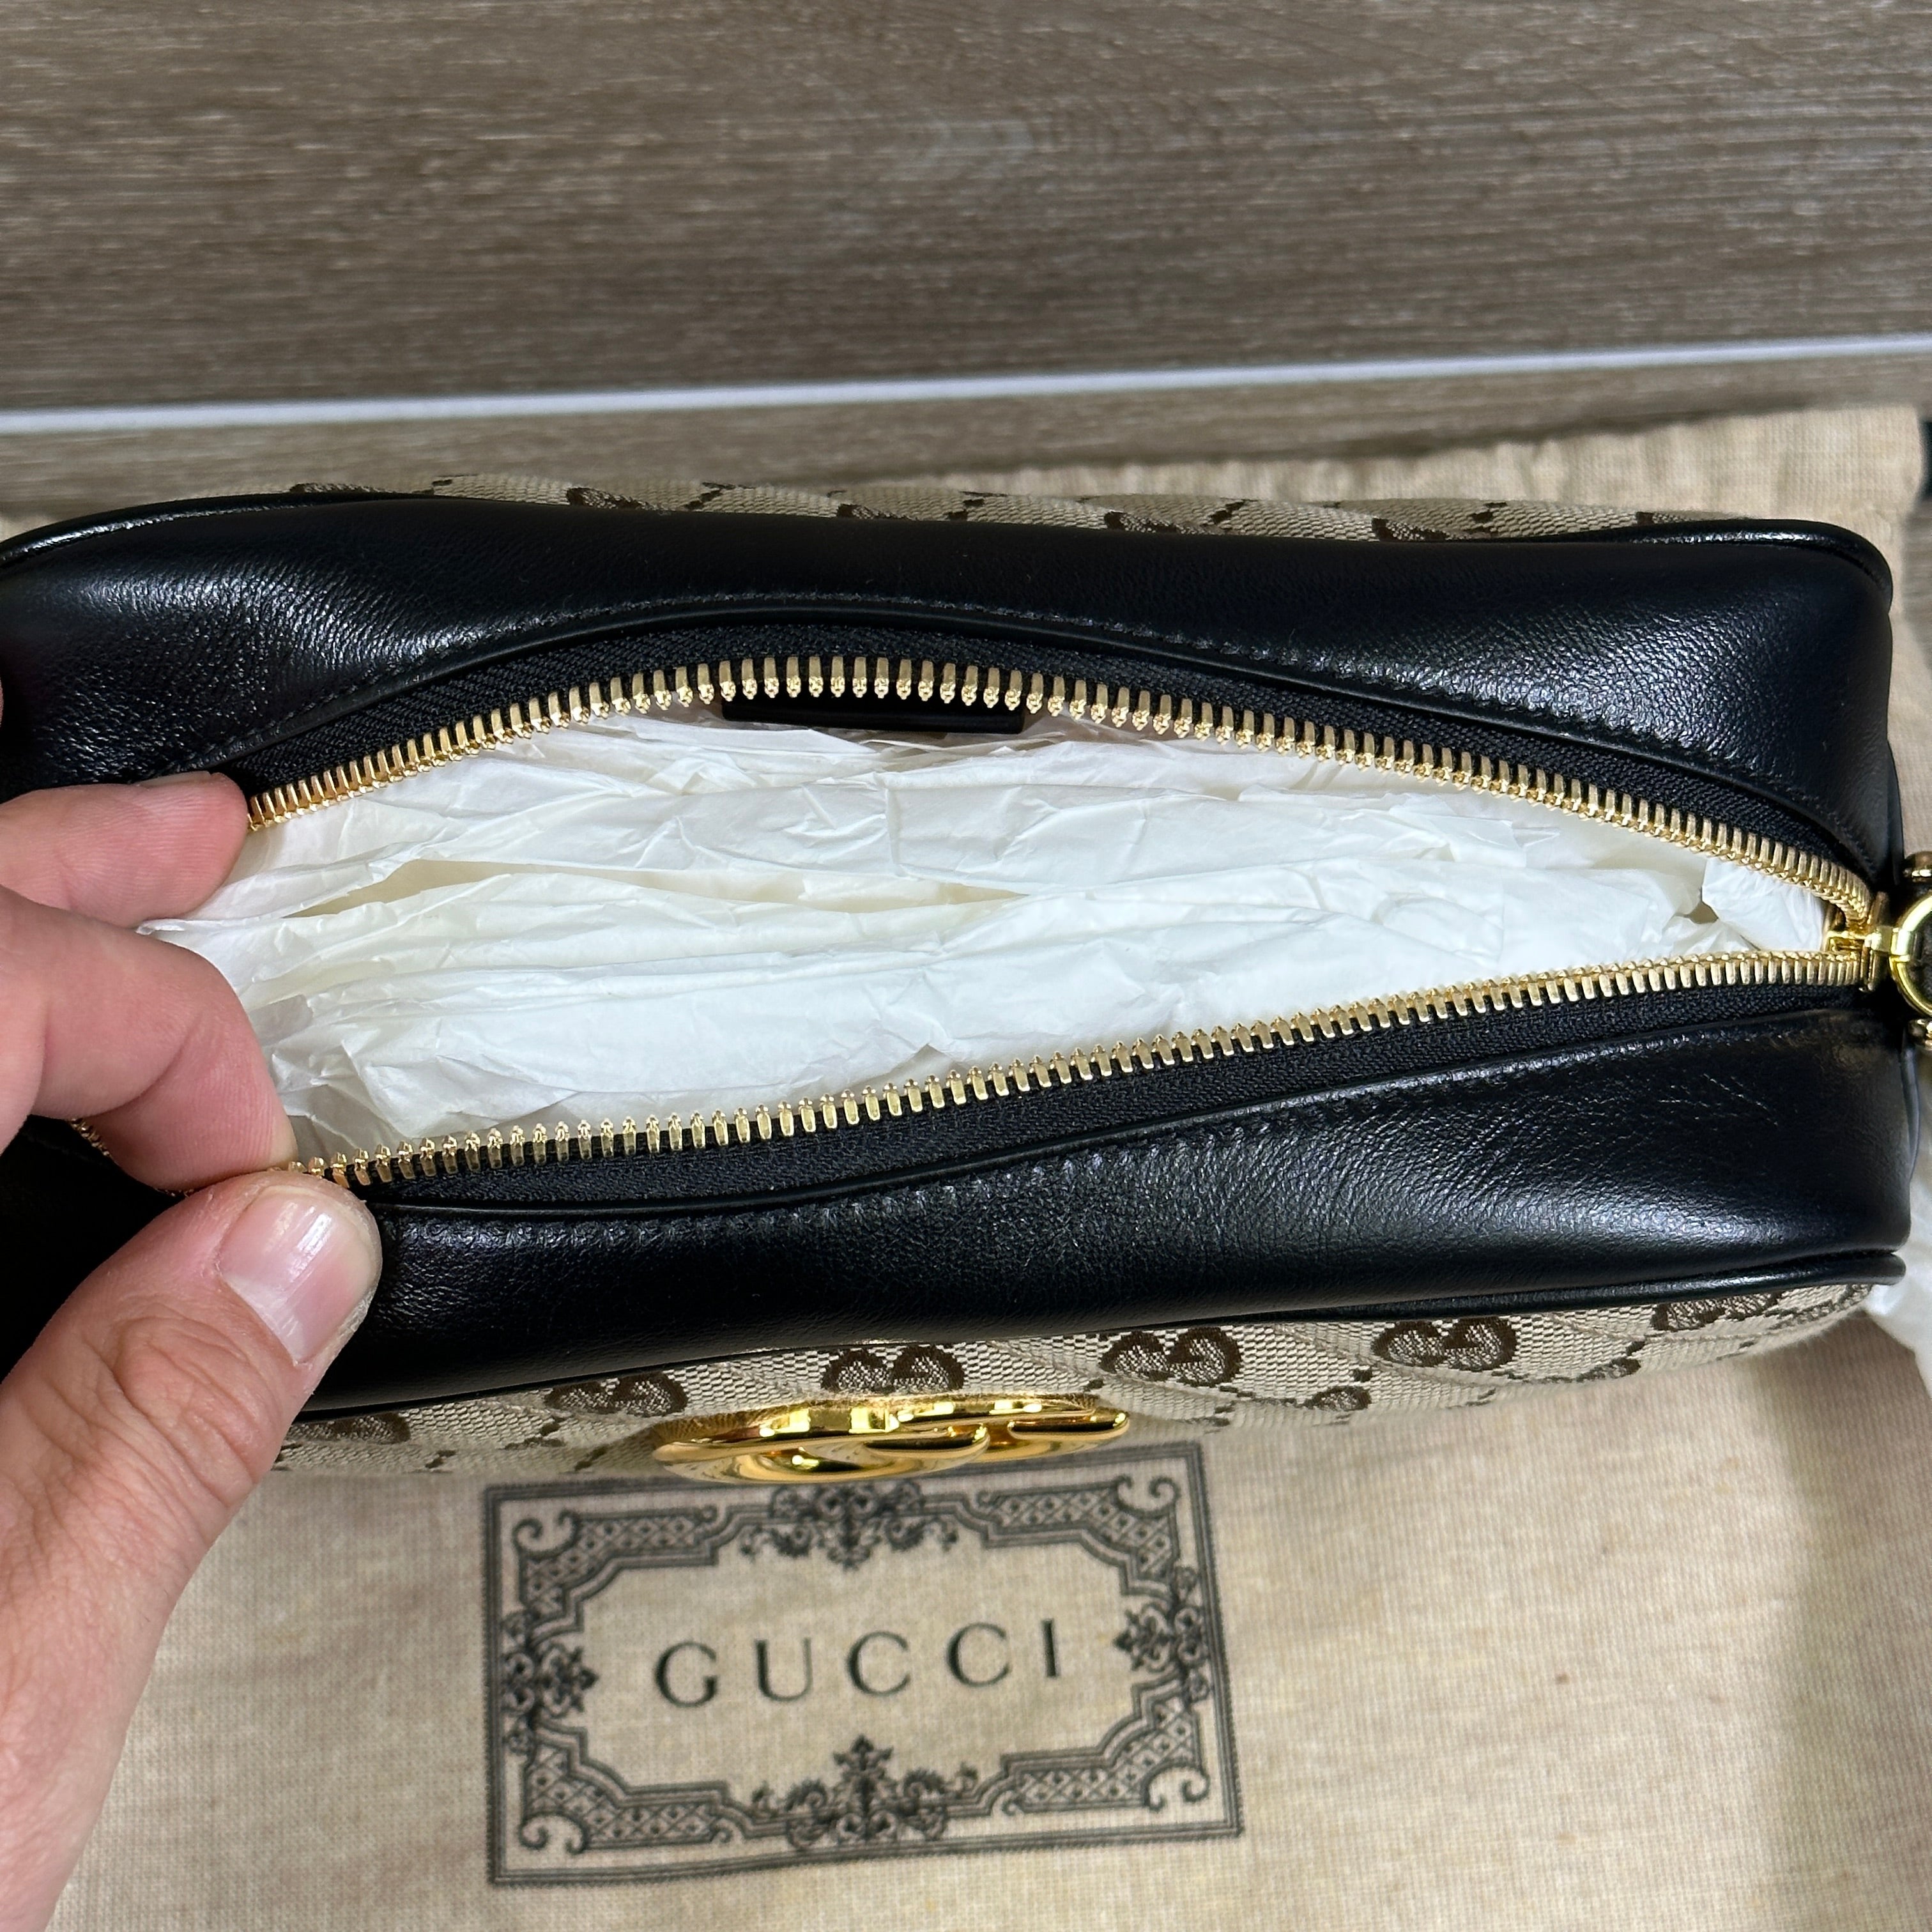 Gucci's Marmont Mini Camera Bag in Black